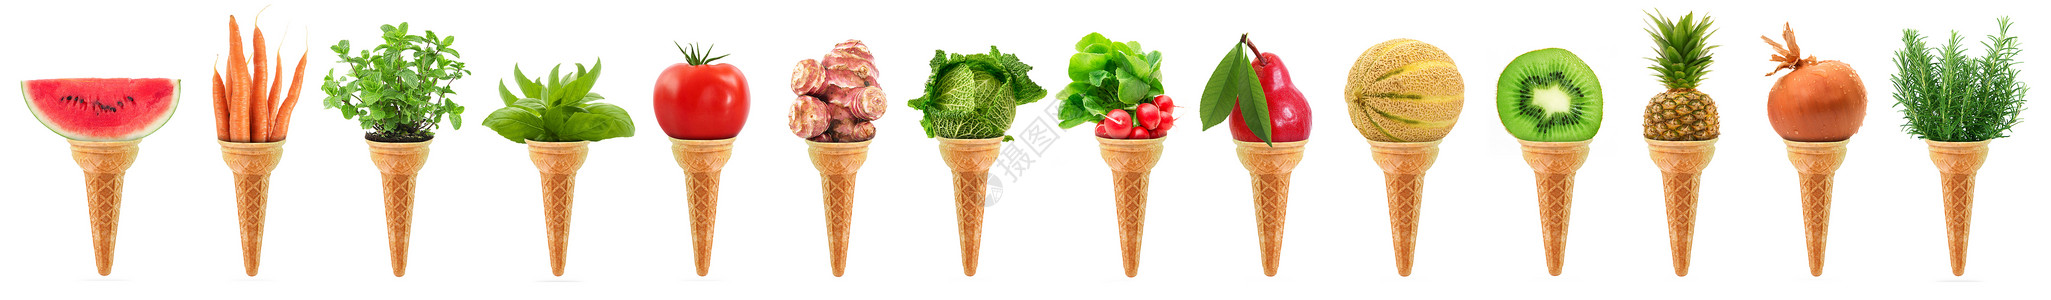 美味的冰淇淋冰淇淋 长长的拼图高清图片